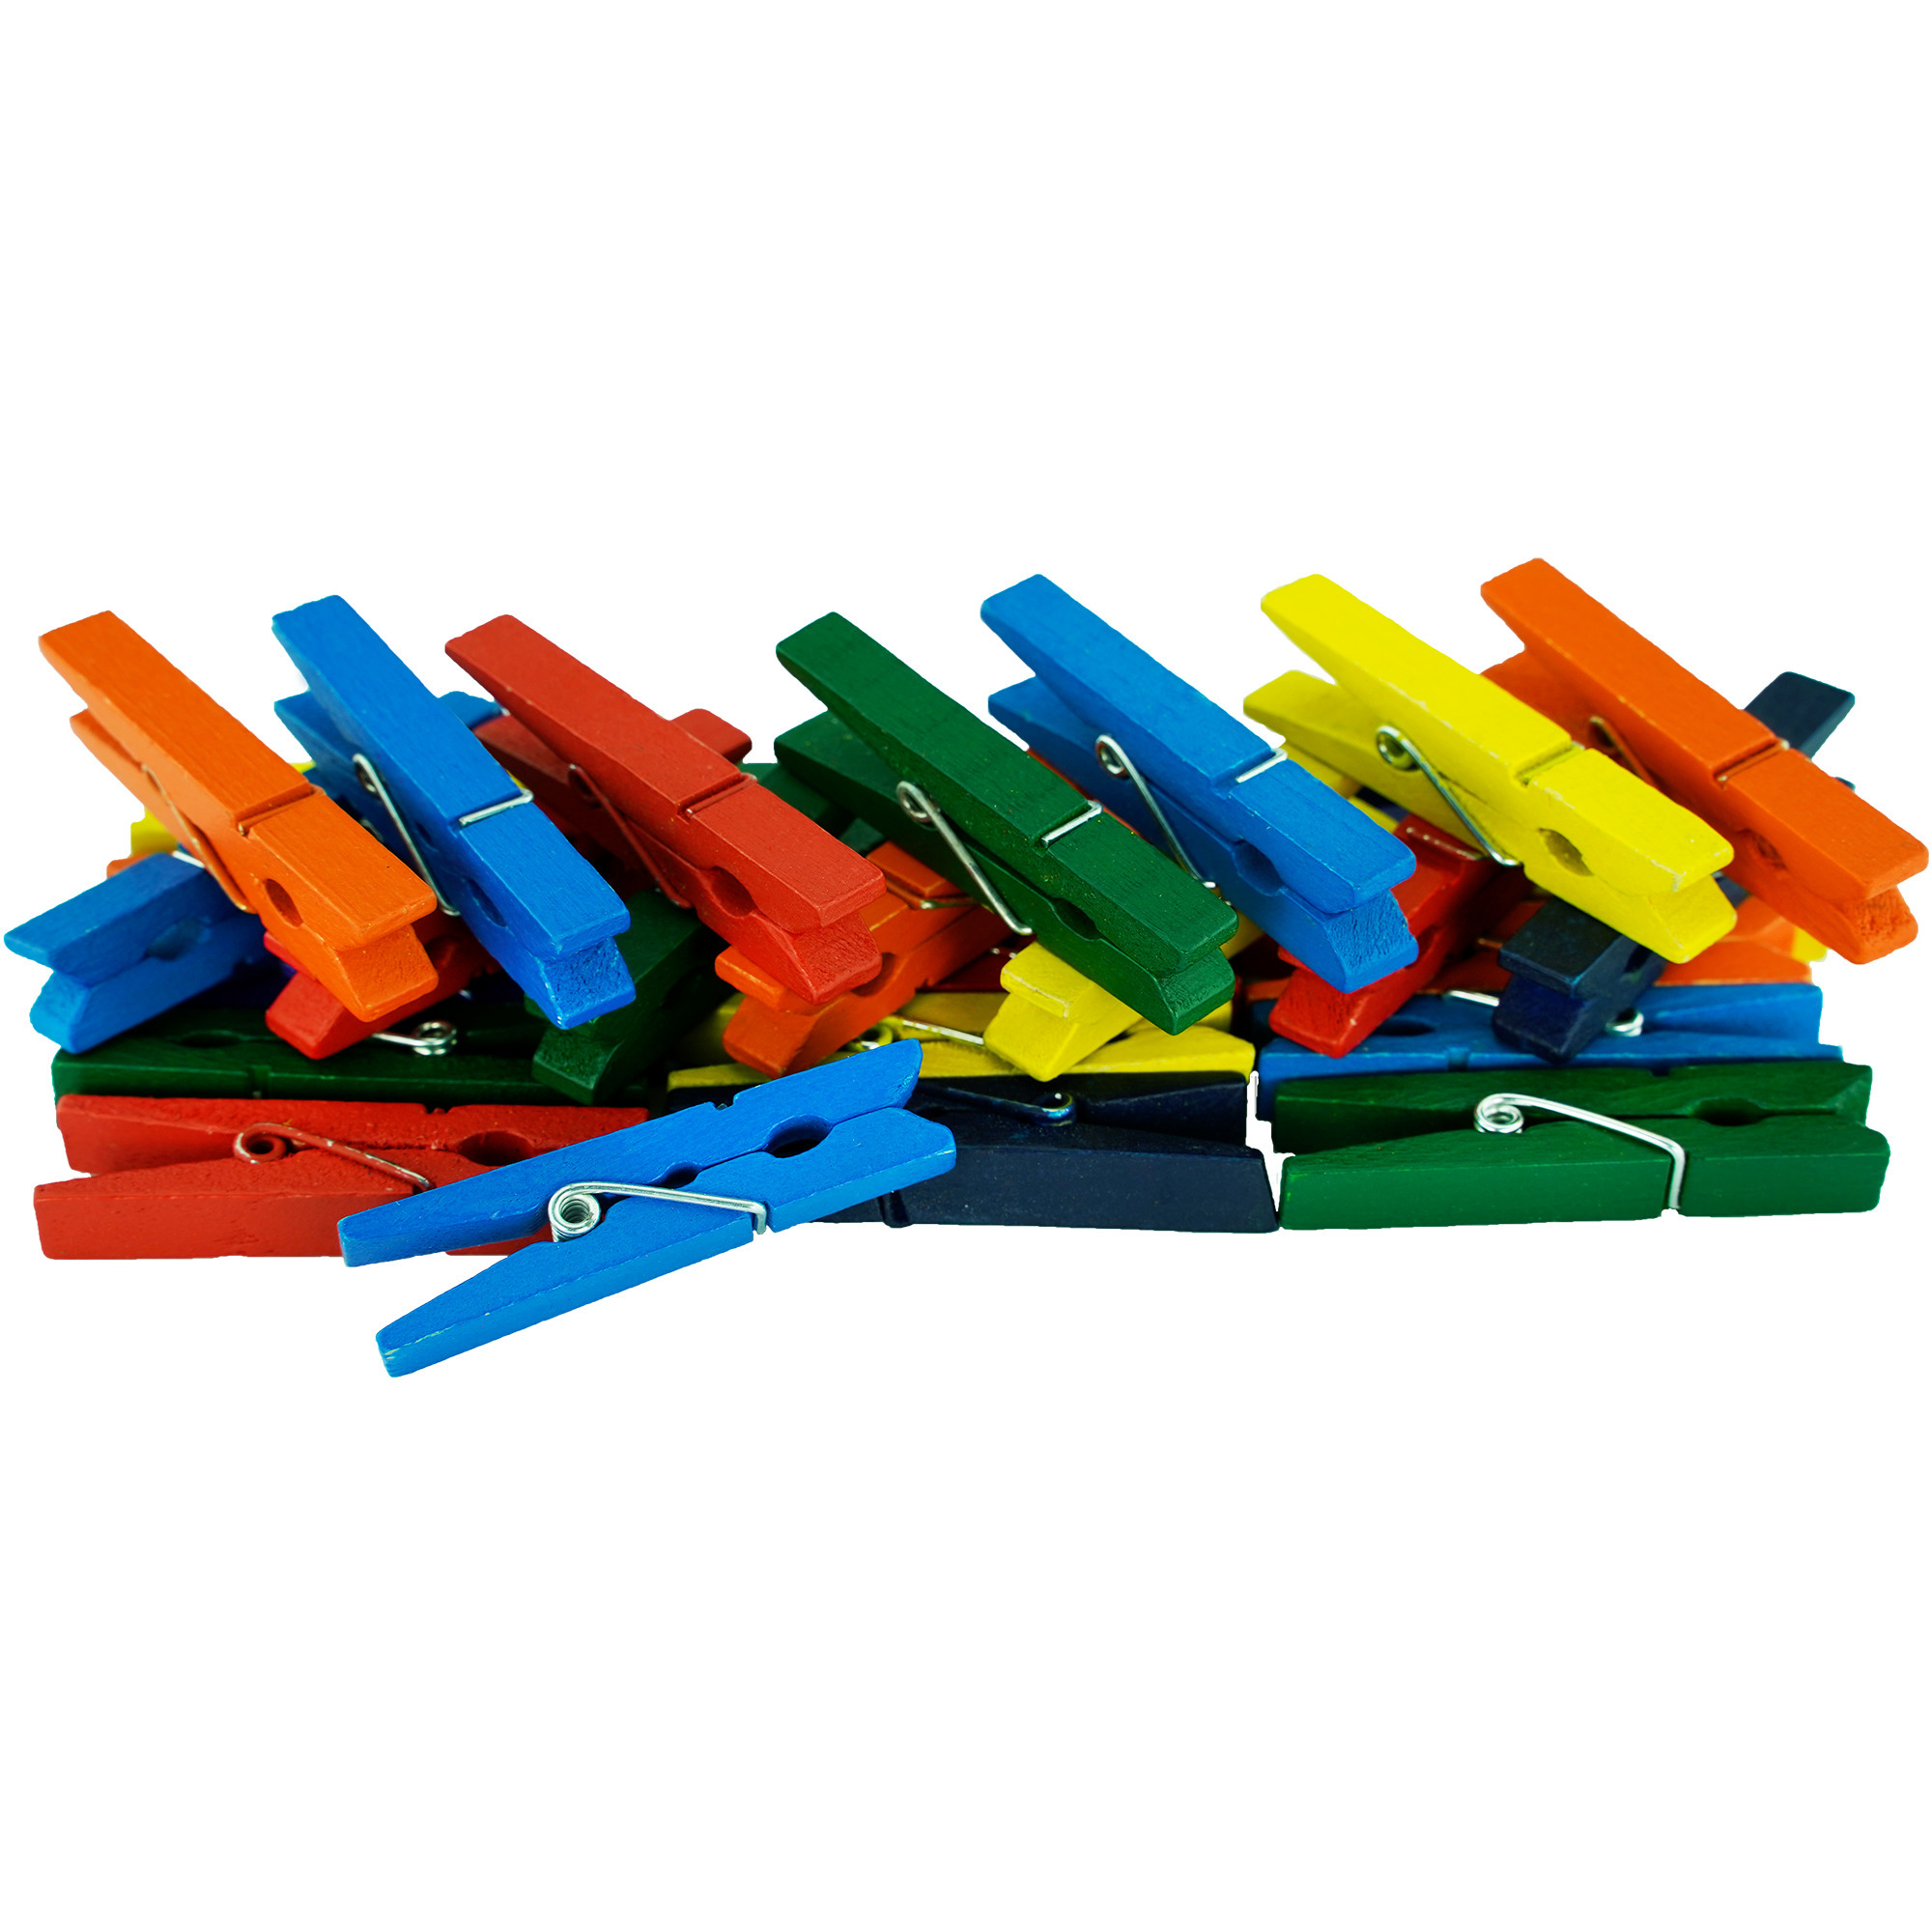 150x stuks multi-color kleur hobby knutselen mini knijpers-knijpertjes 4.5 cm